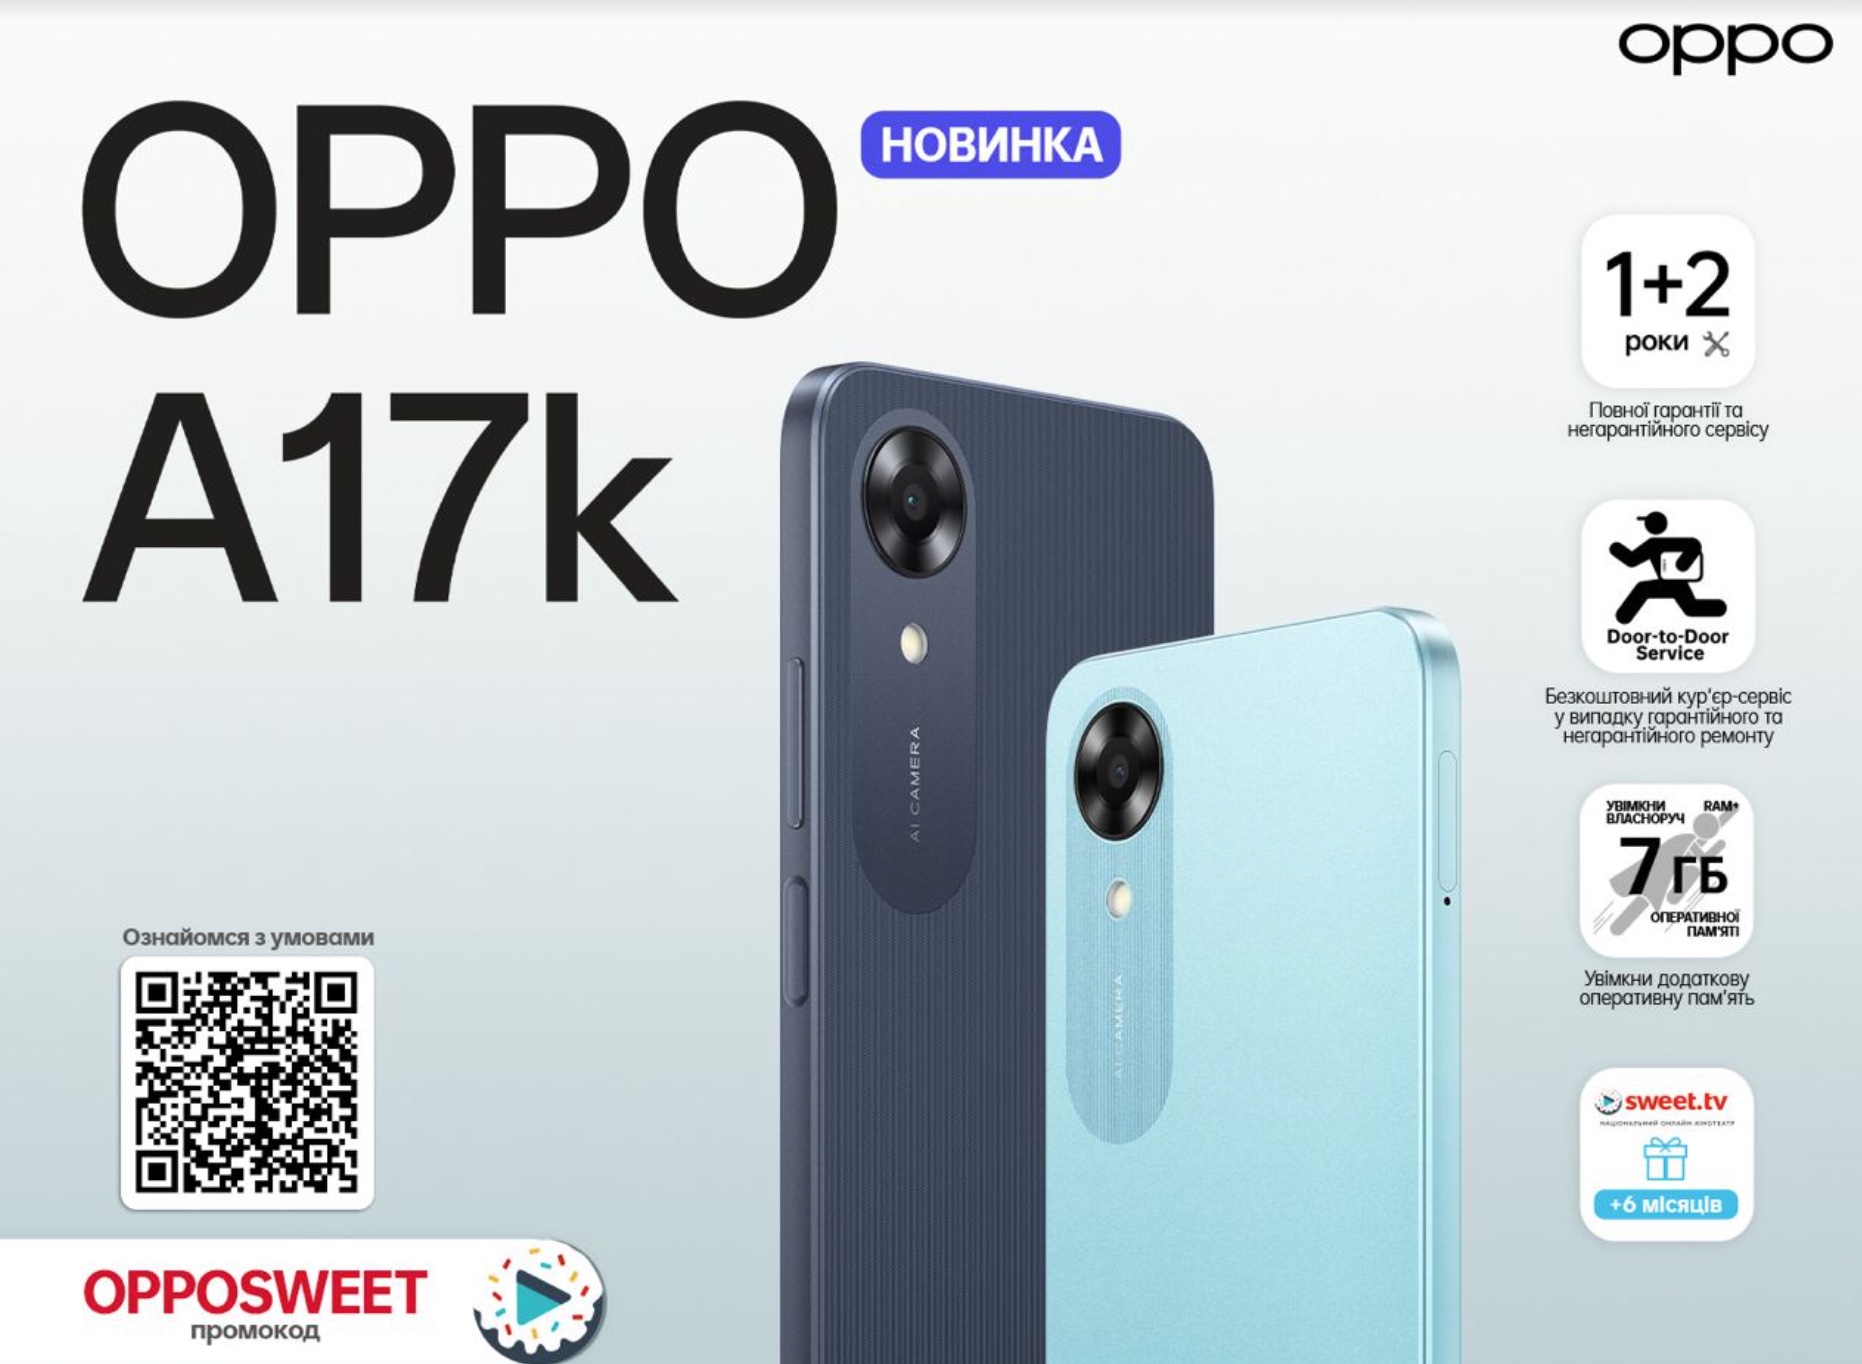 Оppo офіційно представила смартфон A17k з можливістю збільшення оперативної пам’яті в Україні